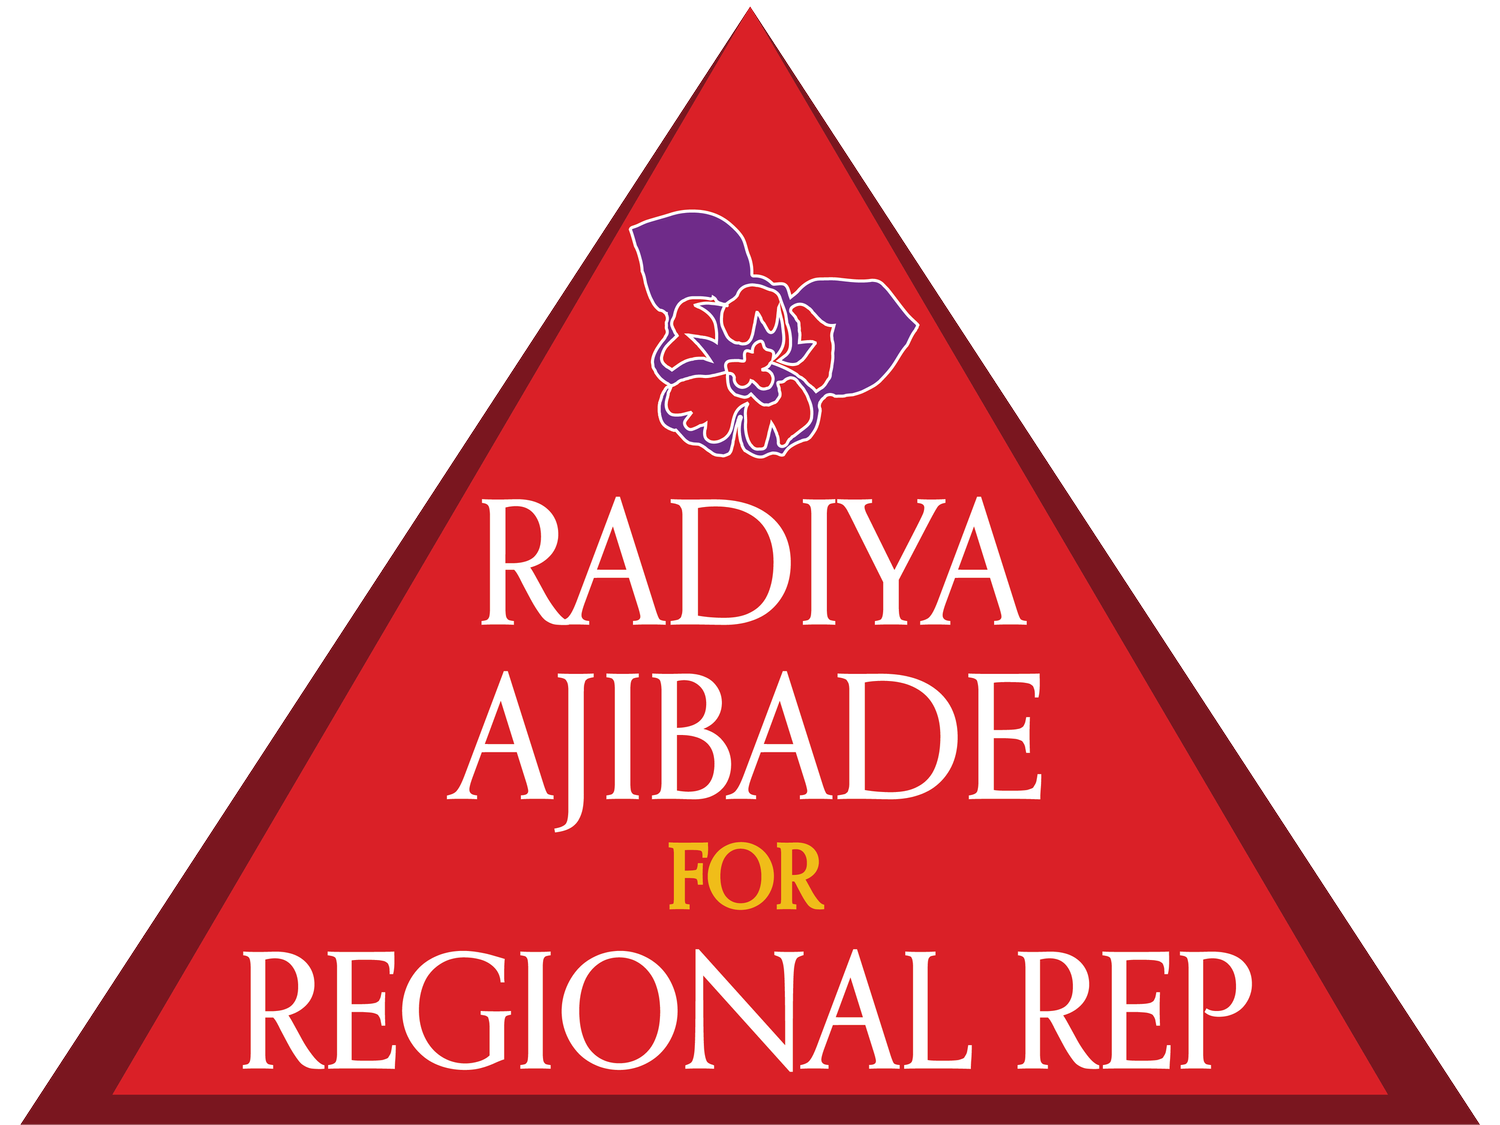 Radiya Ajibade for Farwest Regional Representative